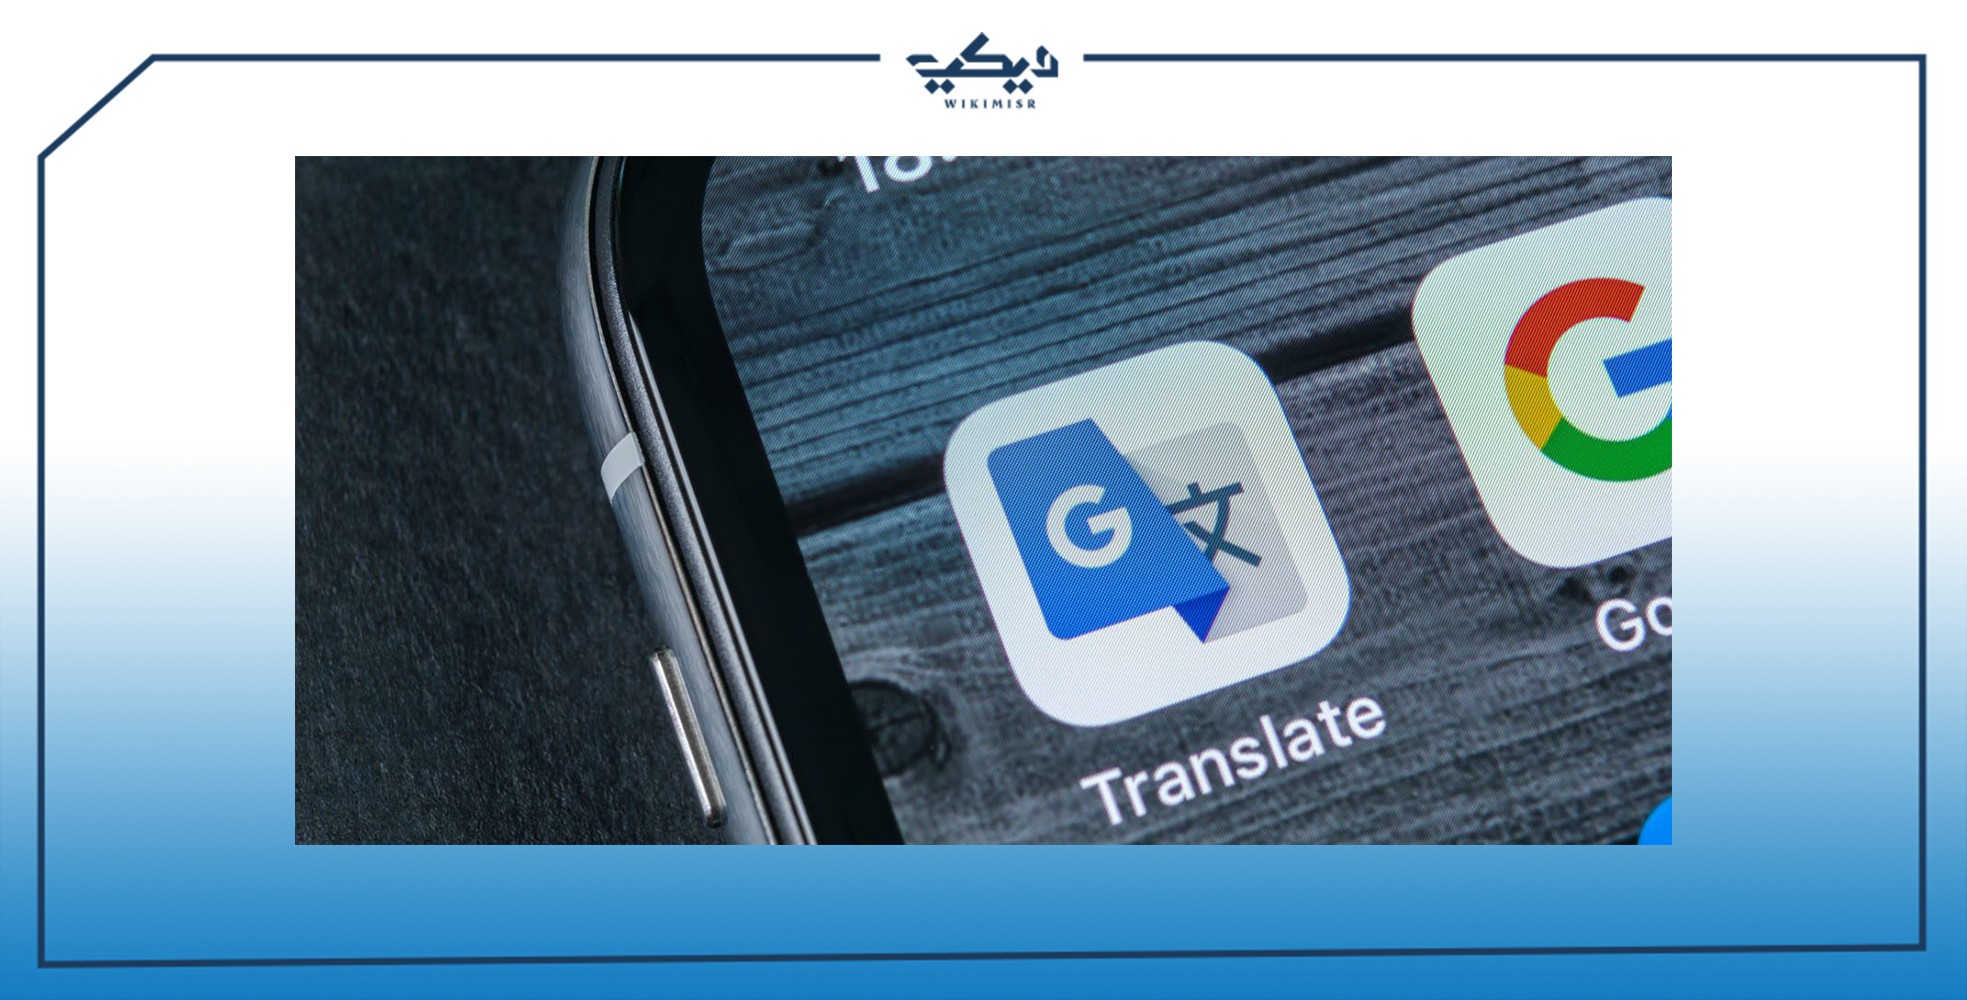 خدمة Google translate ترجمة باستخدام الكاميرا 